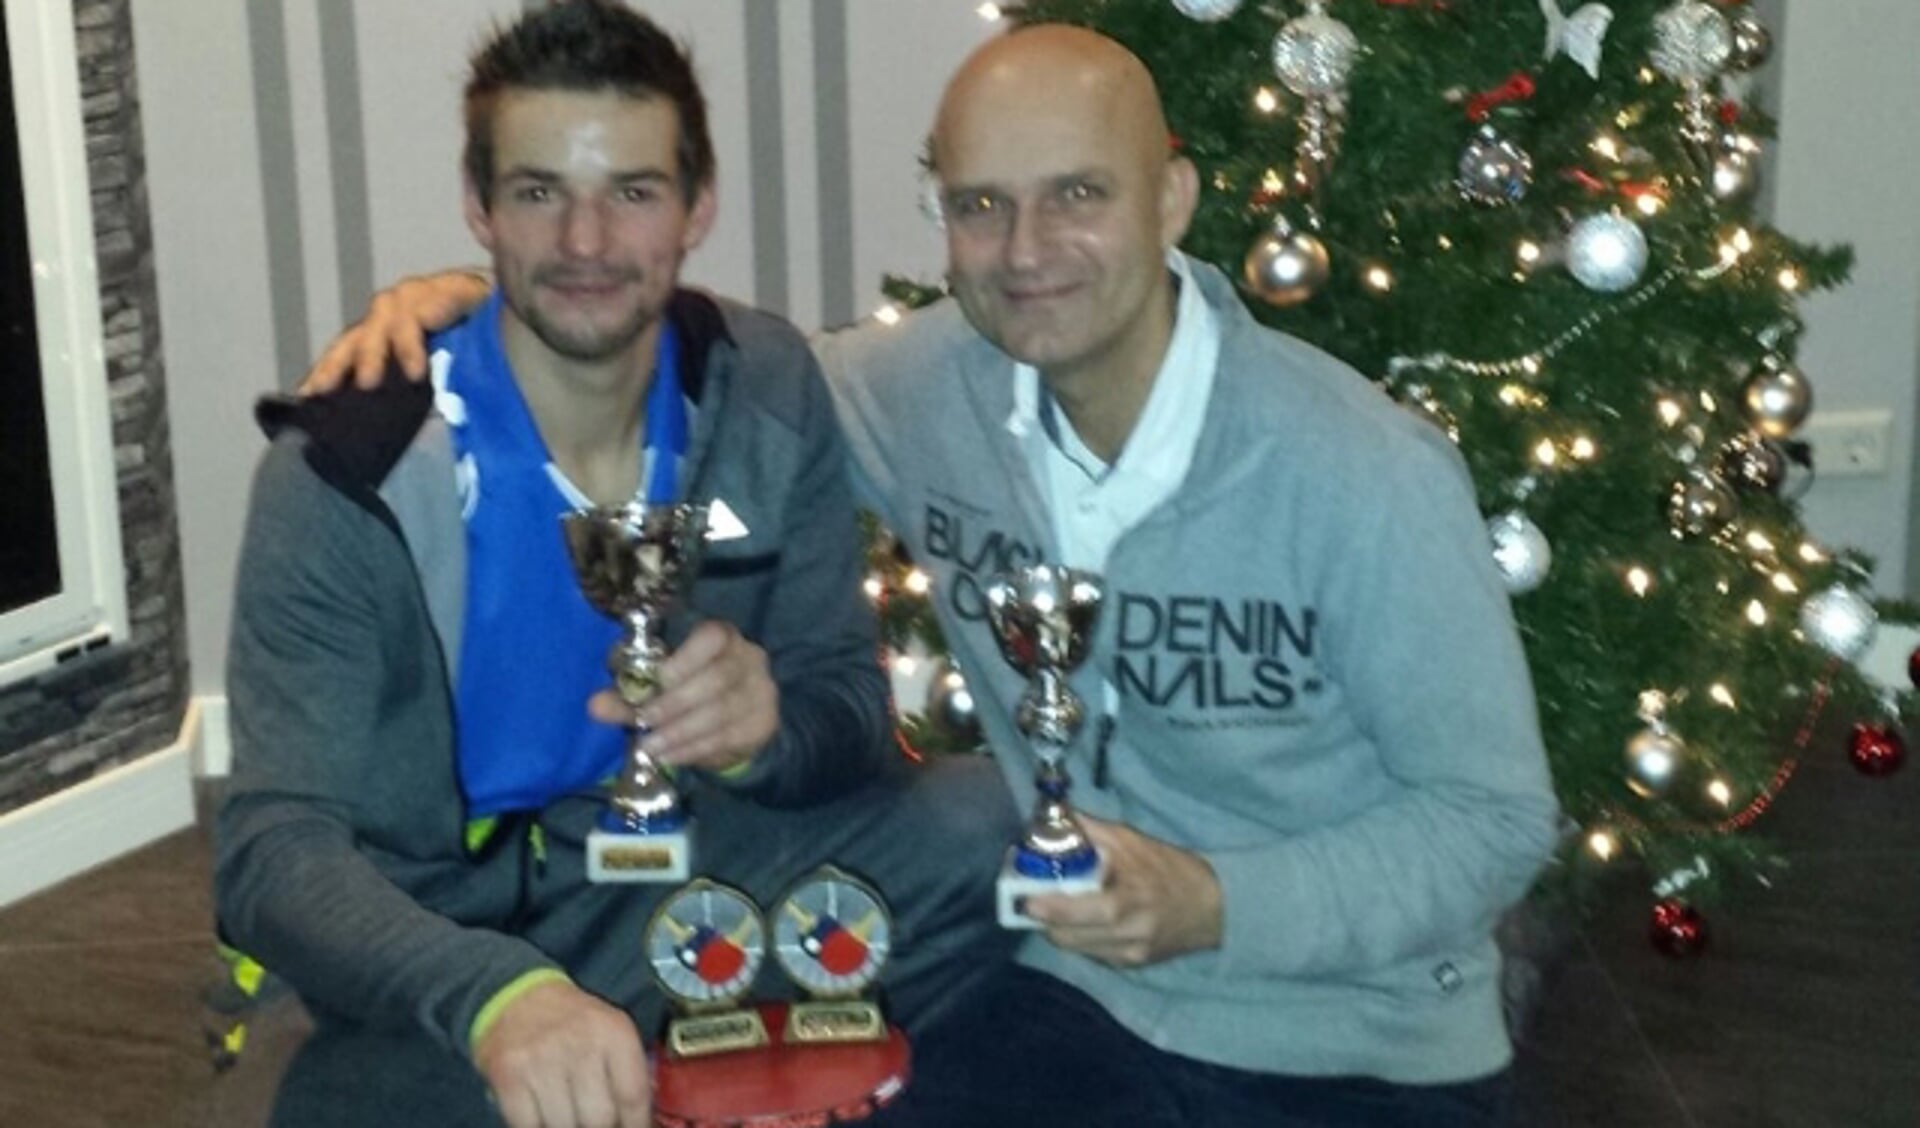  Tromp Baarssen en Jan de Vries met de gewonnen bokalen.